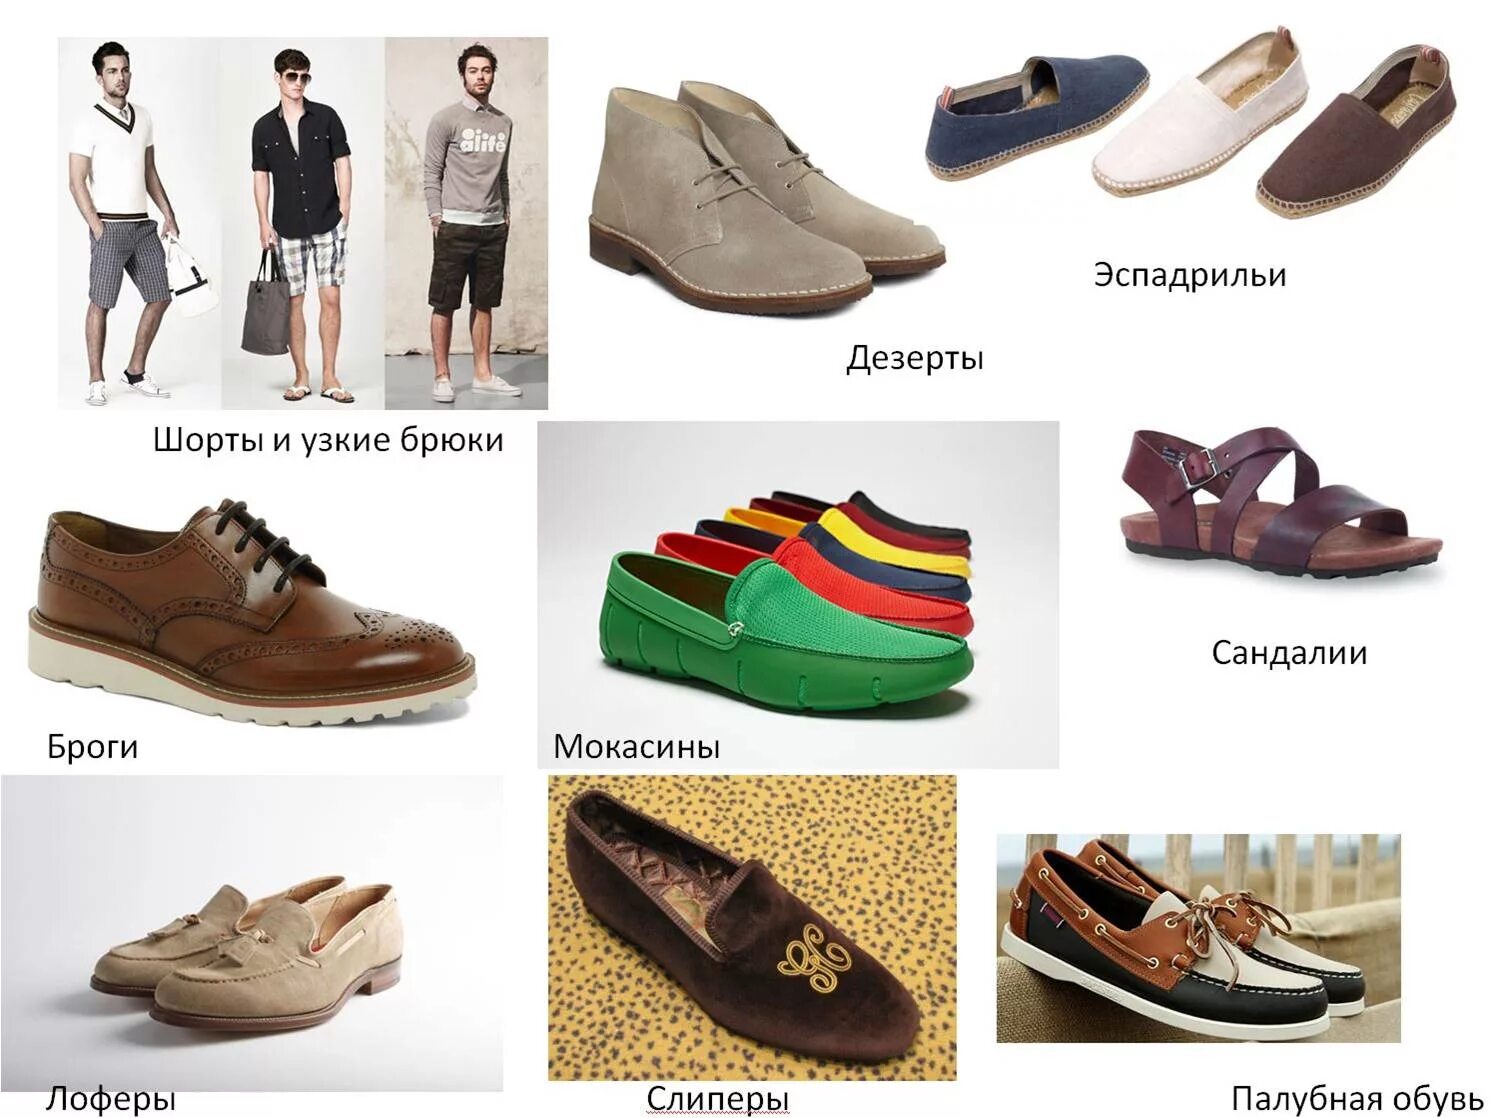 Какую обувь носить в 3. Выбор мужской обуви на весну. Обувь для ношения в доме. Какую обувь носить весной летом. Одевать обувь.